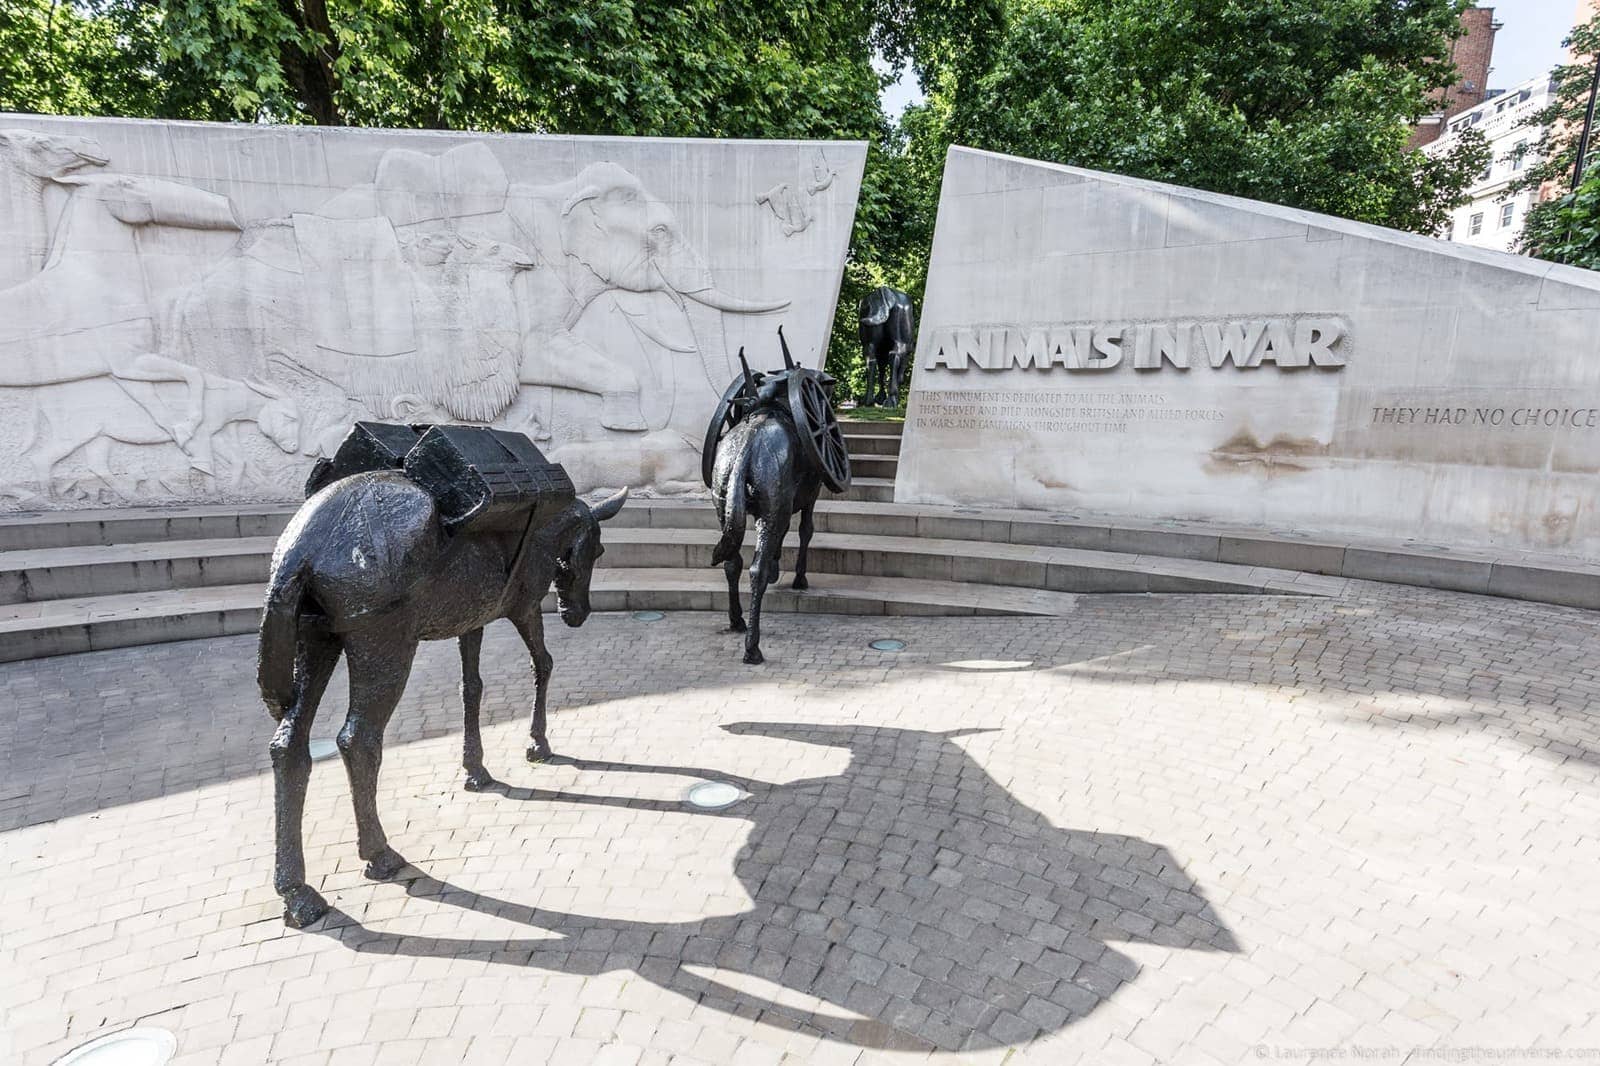 Animals in War memorial